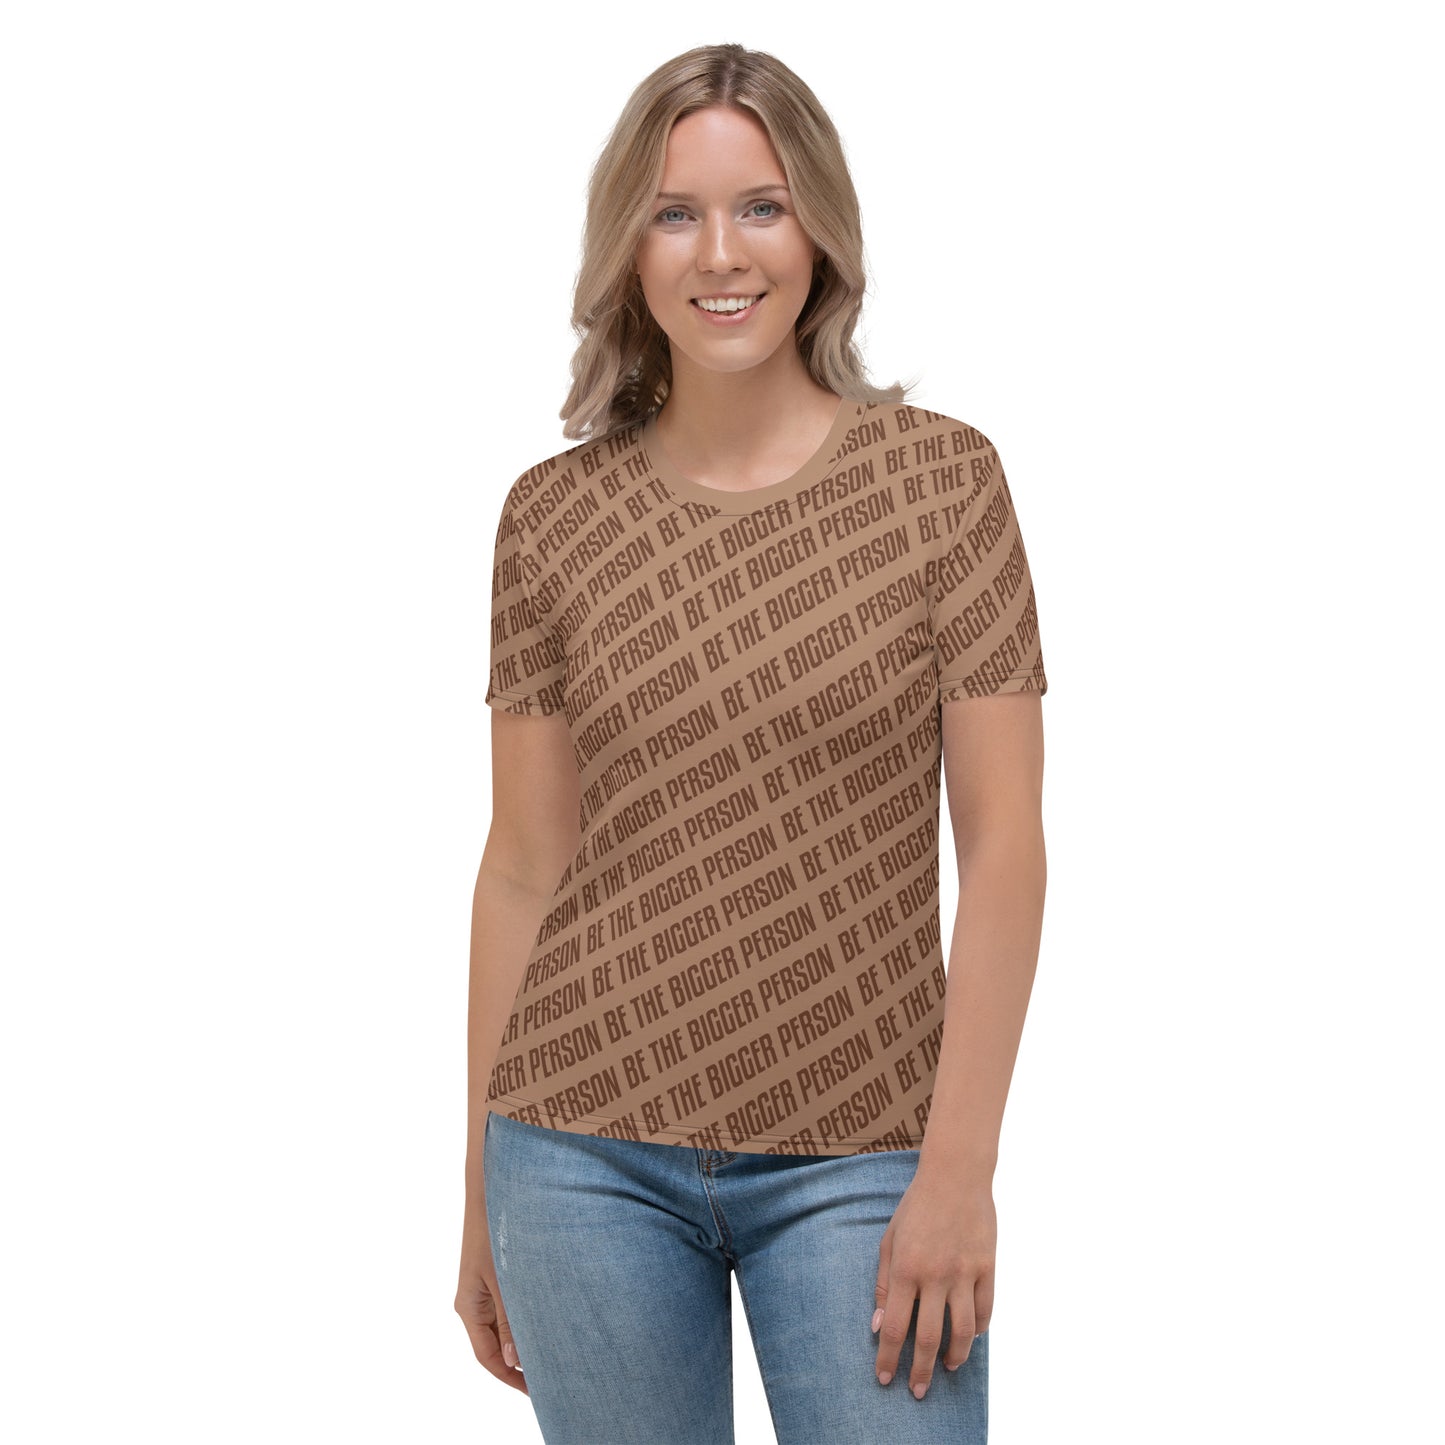 BROWN NOSER - Women's T-shirt